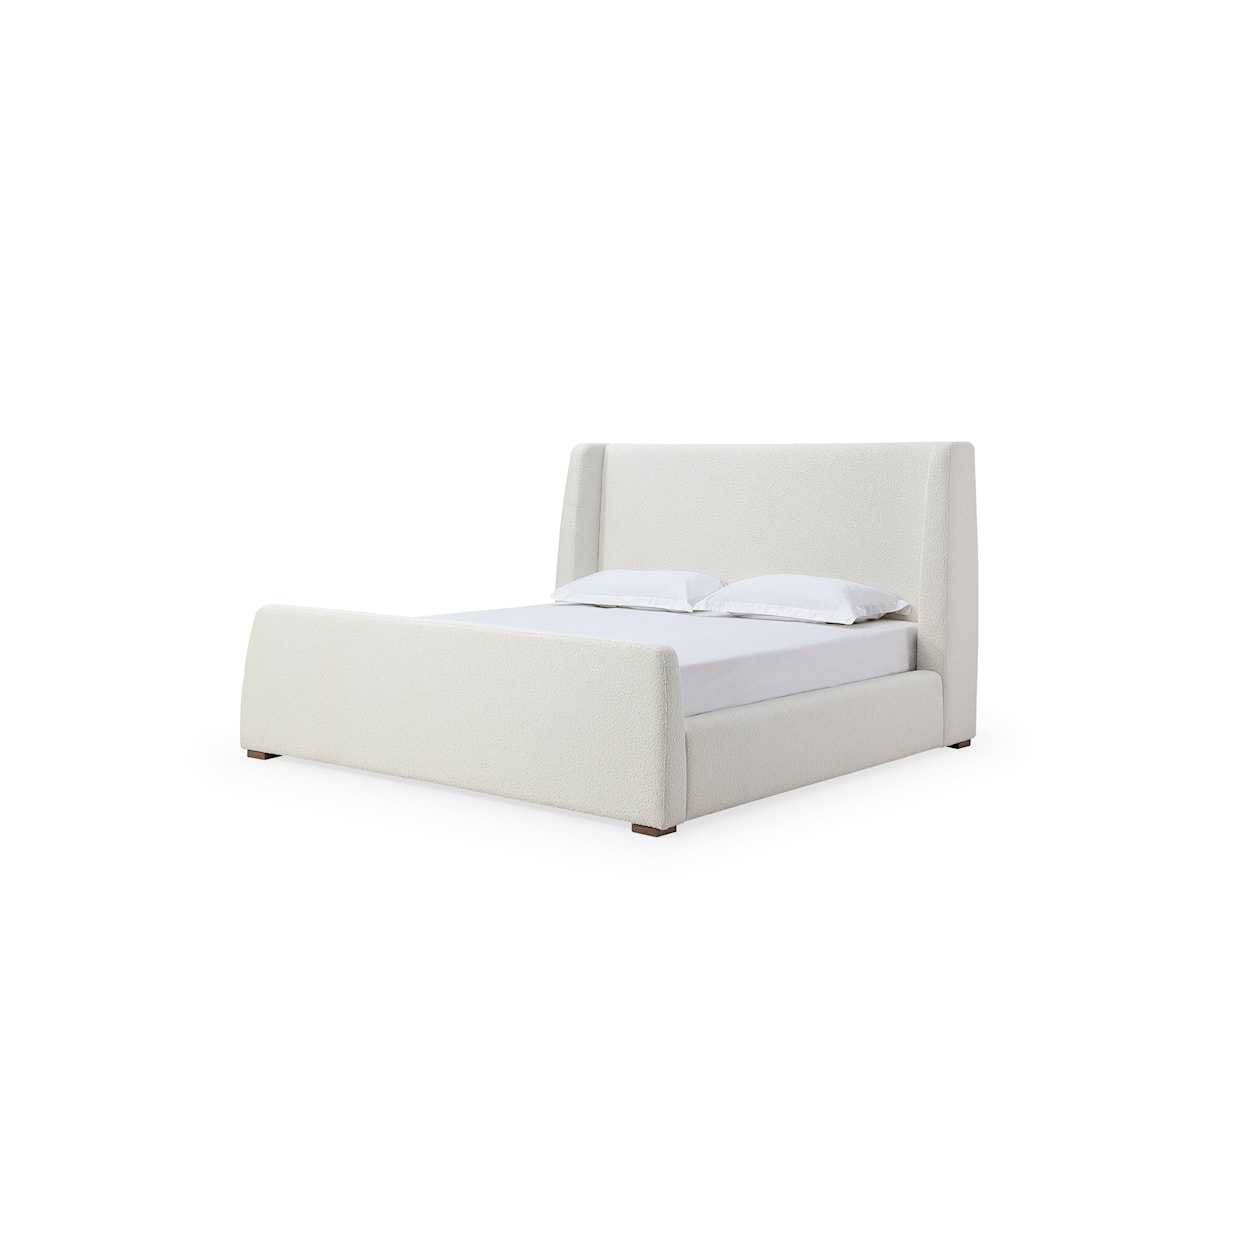 Modus International Formosa Presley Upholstered King Bed